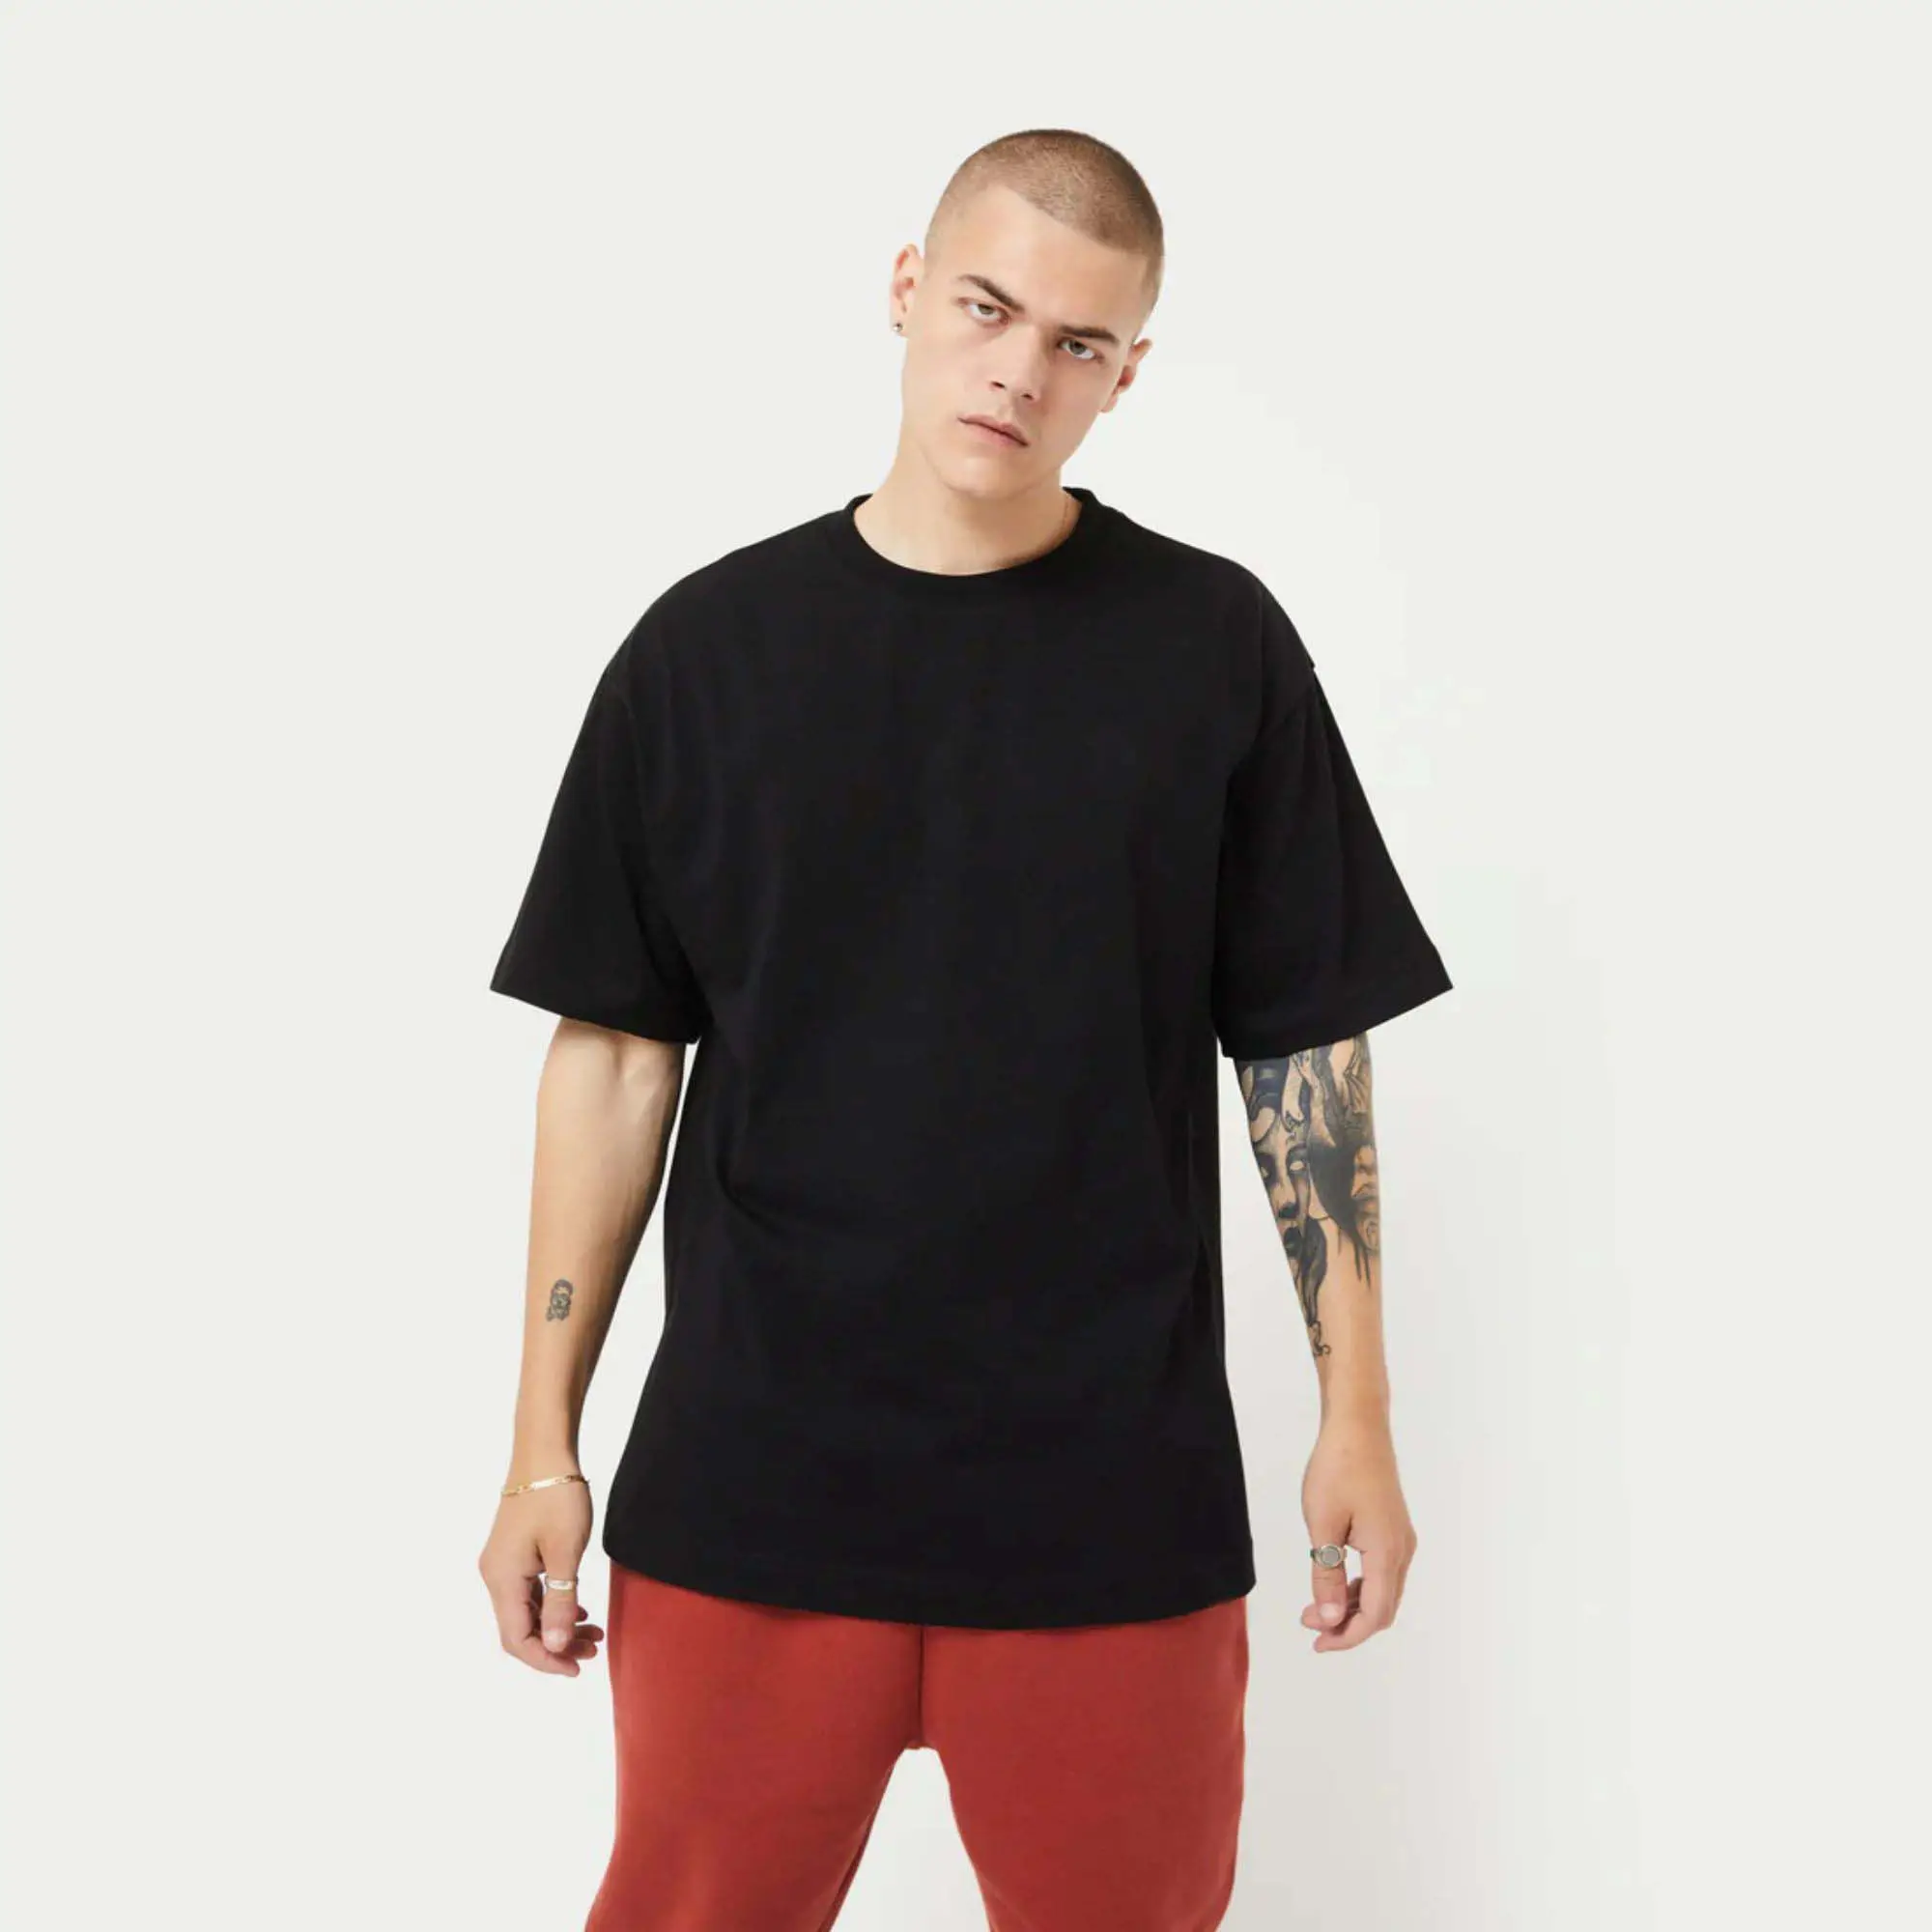 Hochwertige schwere übergroße Unisex T-Shirt Männer Baumwolle O-Ausschnitt Design Vintage T-Shirt benutzer definierte Druck Stickerei T-Shirt